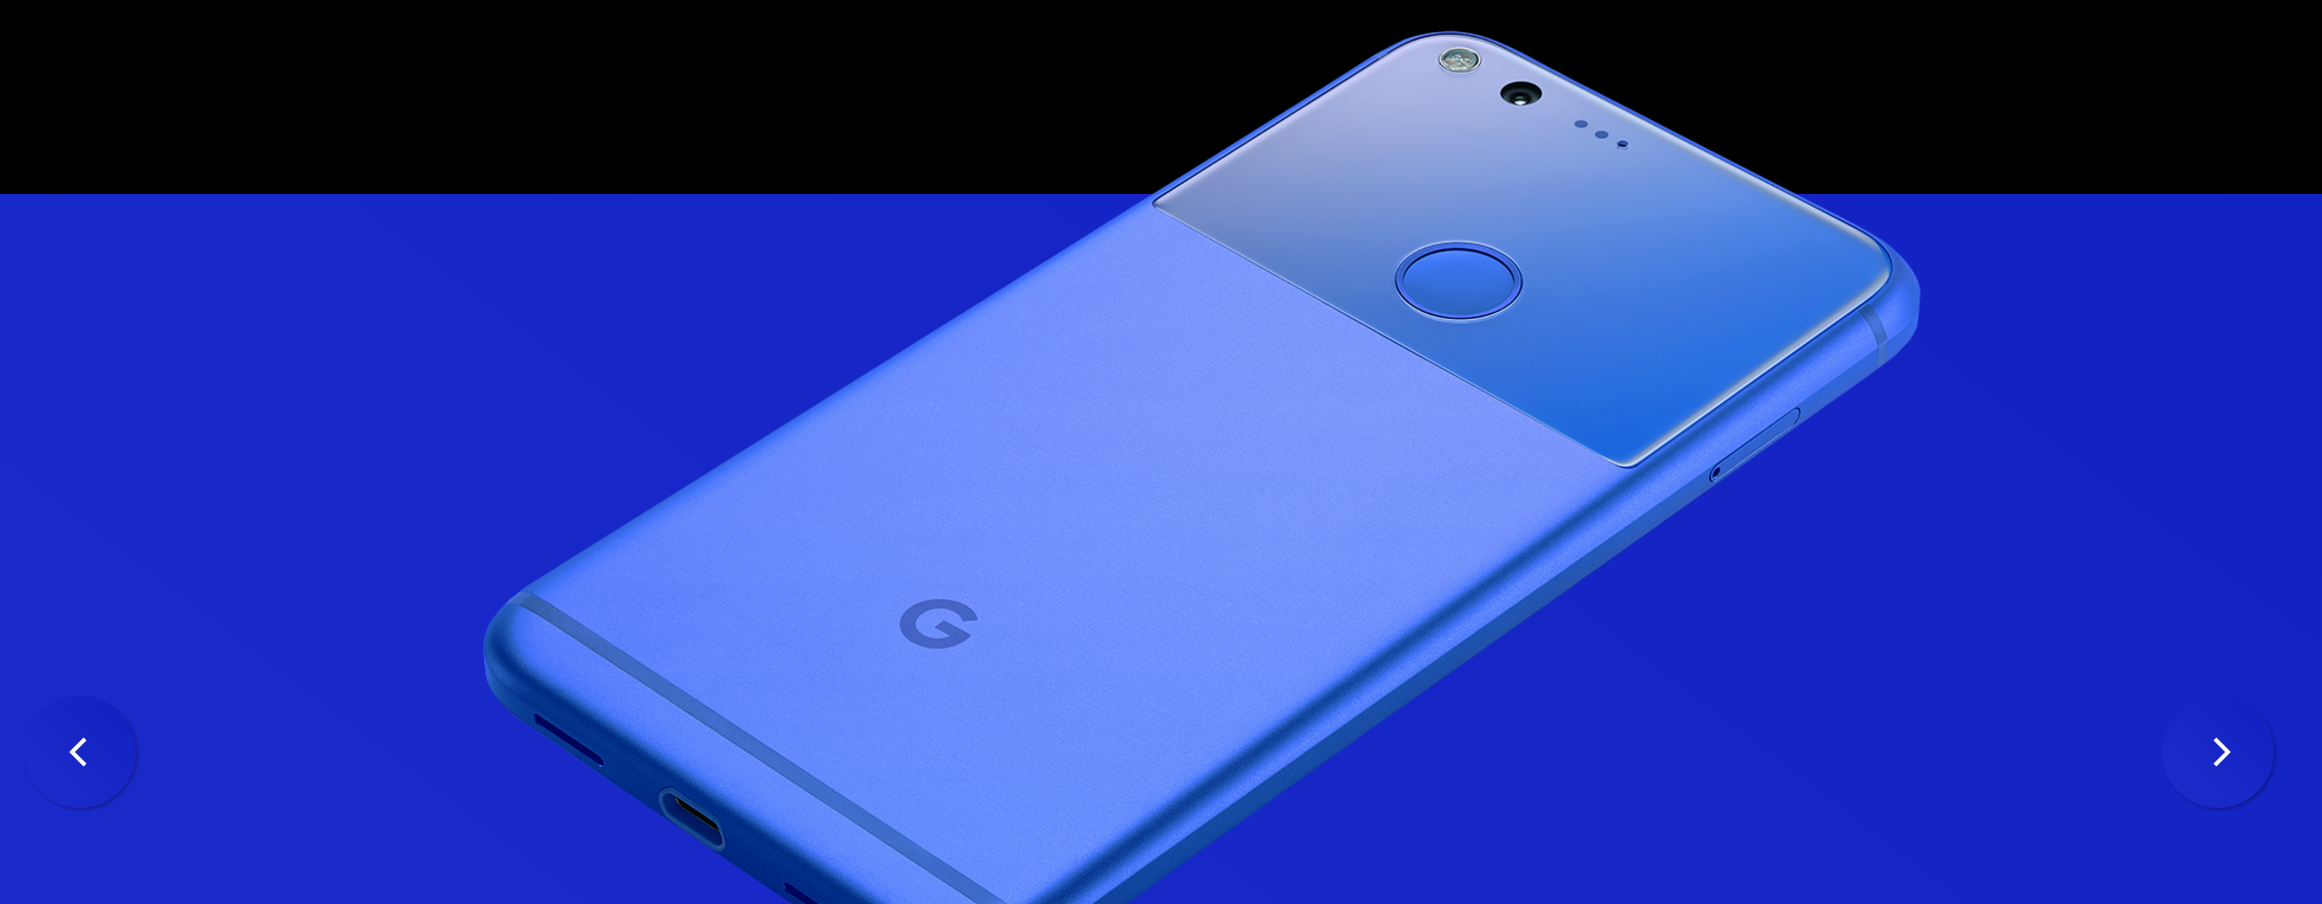 El soporte en el dispositivo para Google Pixel y XL se suspenderá después de octubre de 2019